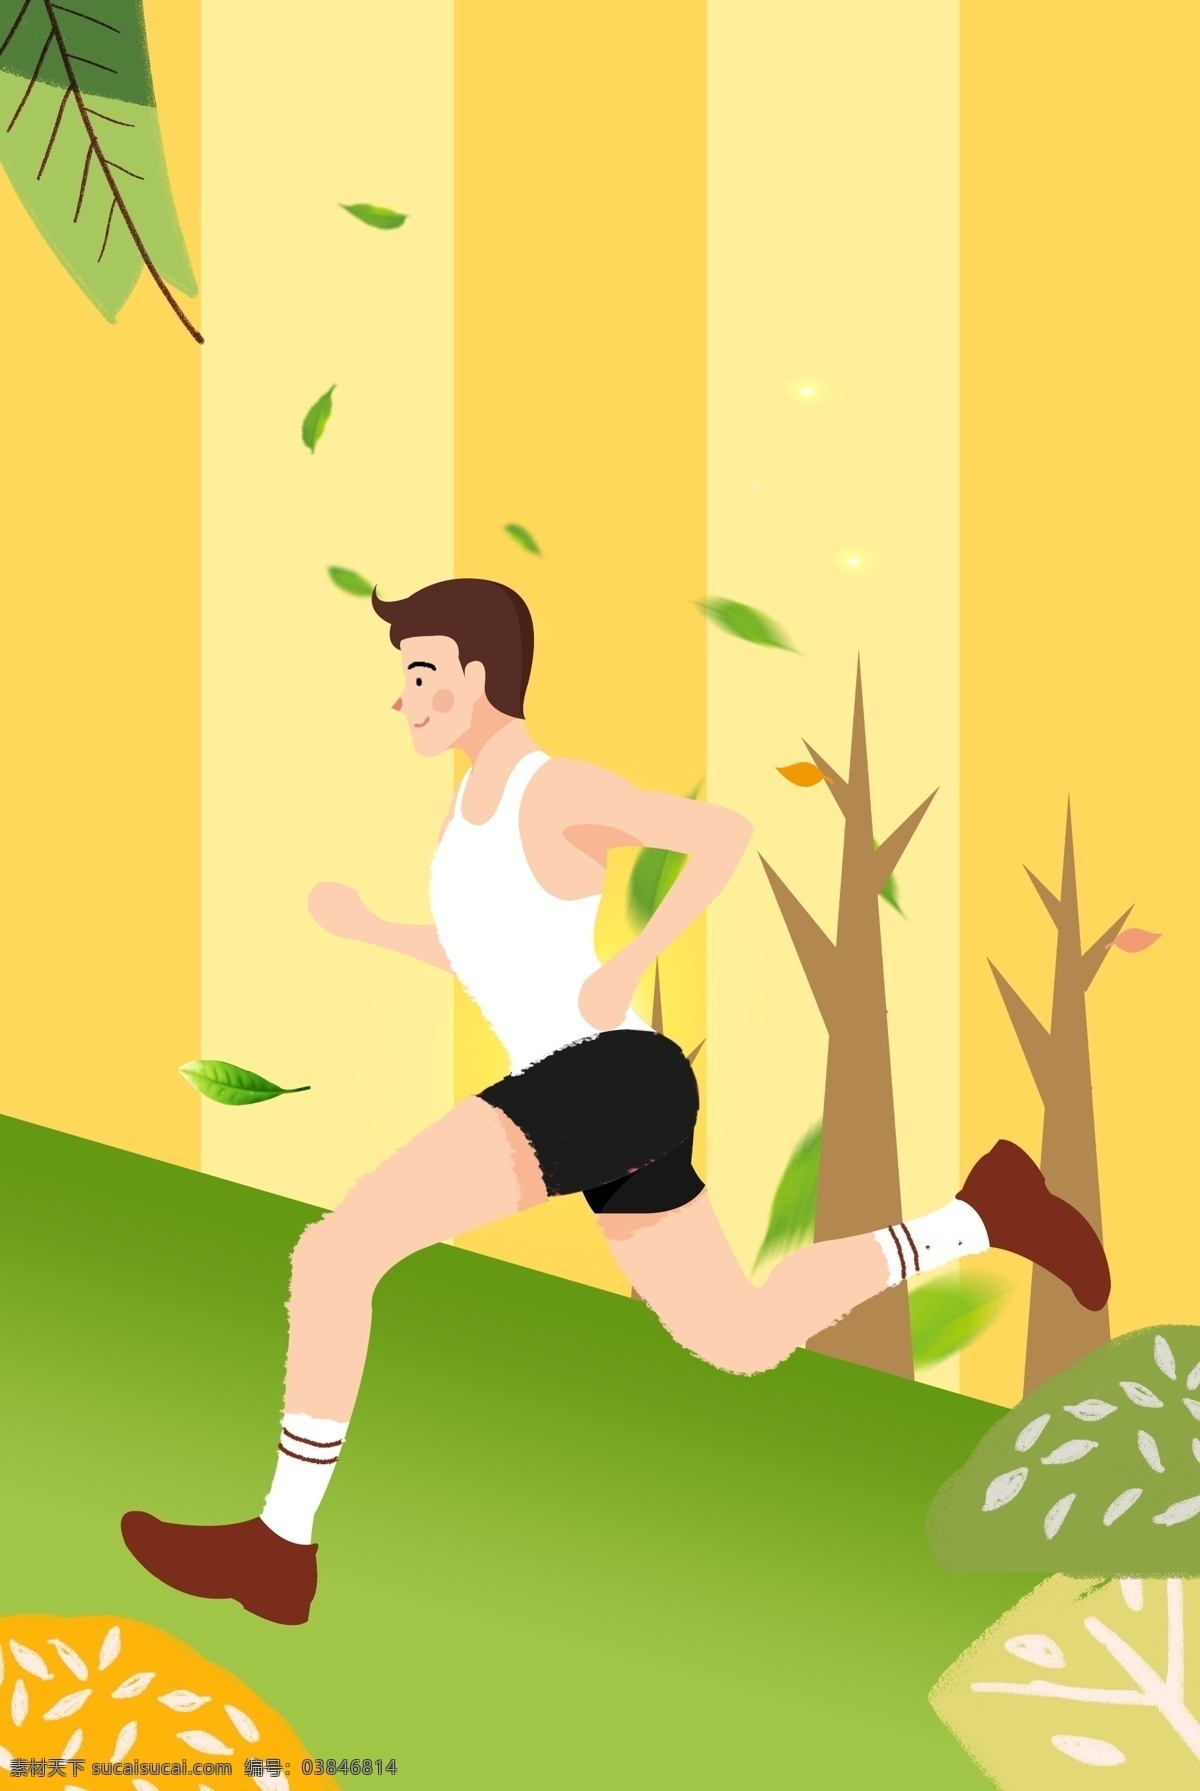 简约 燃烧 的卡 路里 运动 海报 跑步 健身 健身海报 海报健身 运动海报 健身模板 锻炼海报